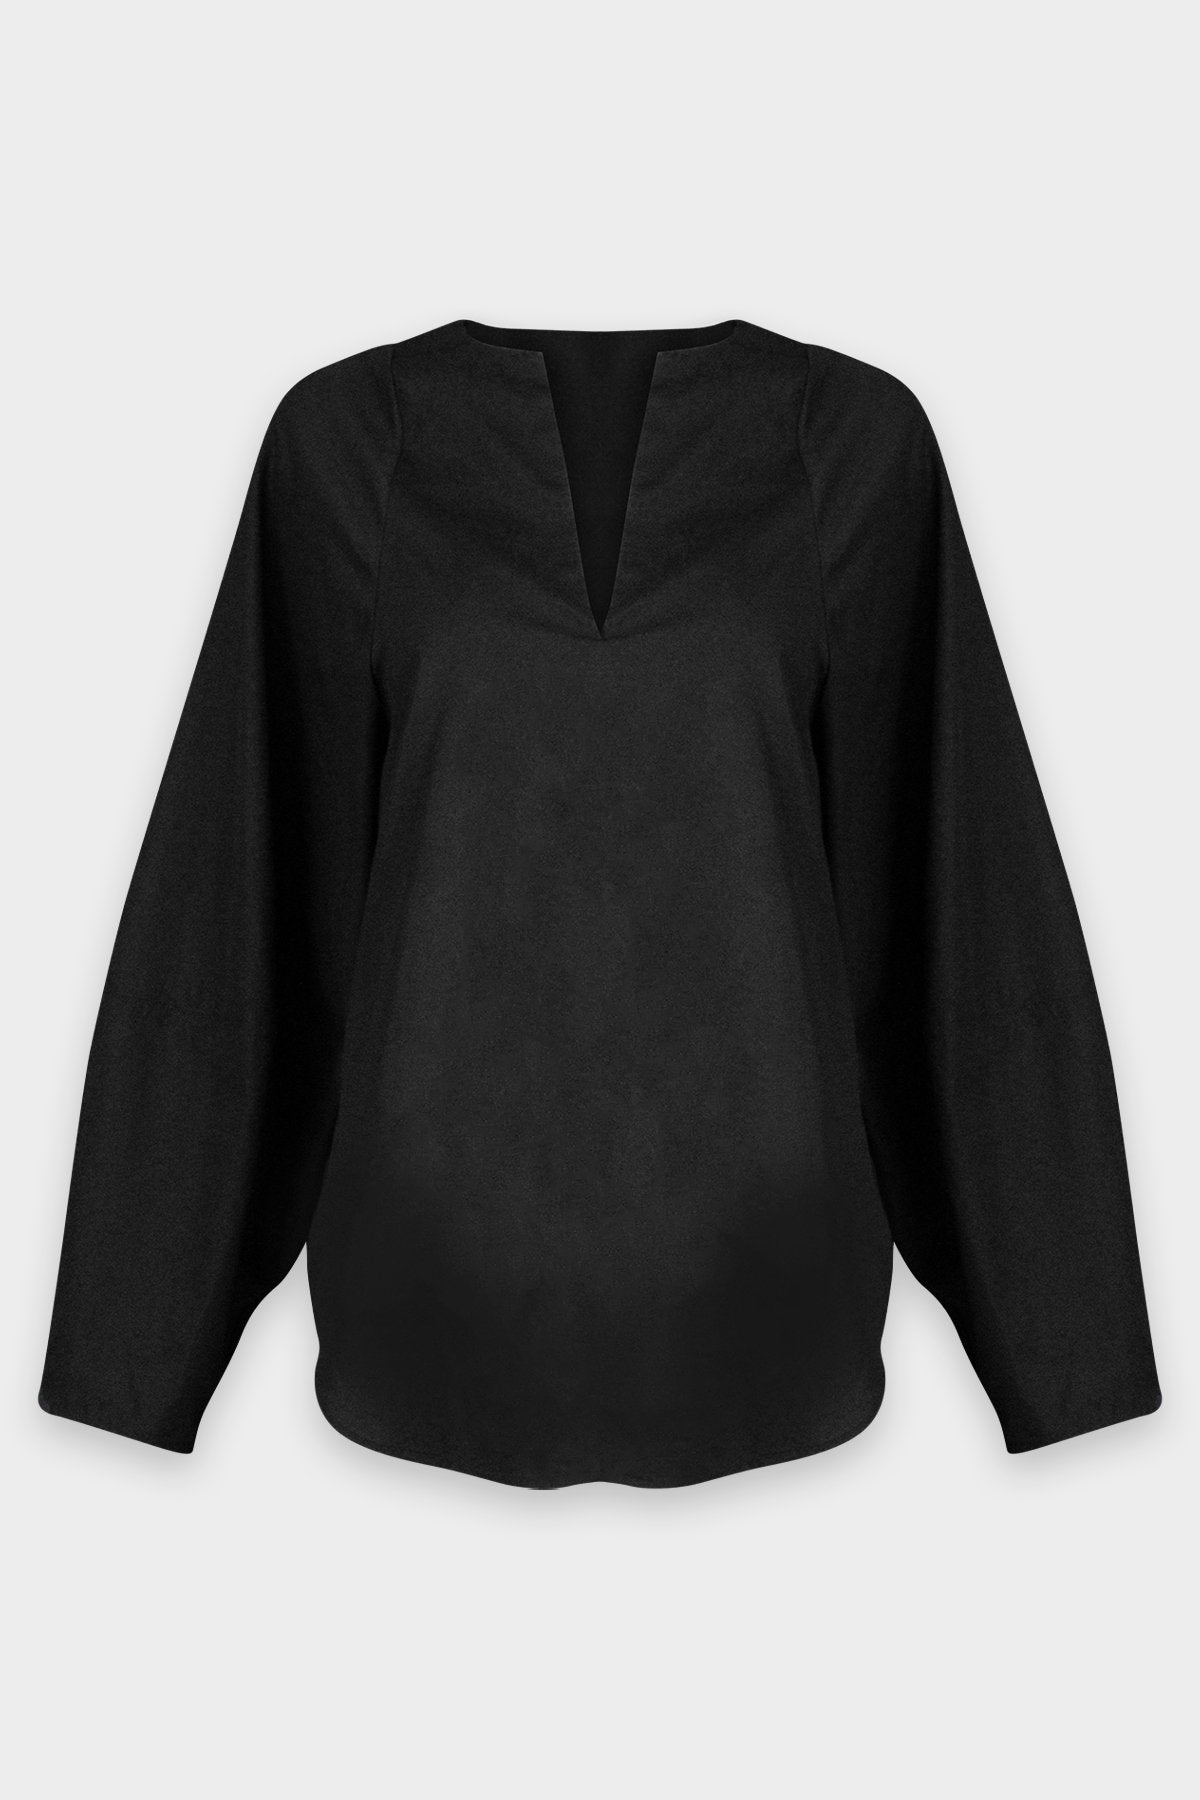 Shaped V-Neck Long Sleeve Popover in Black - shop-olivia.com